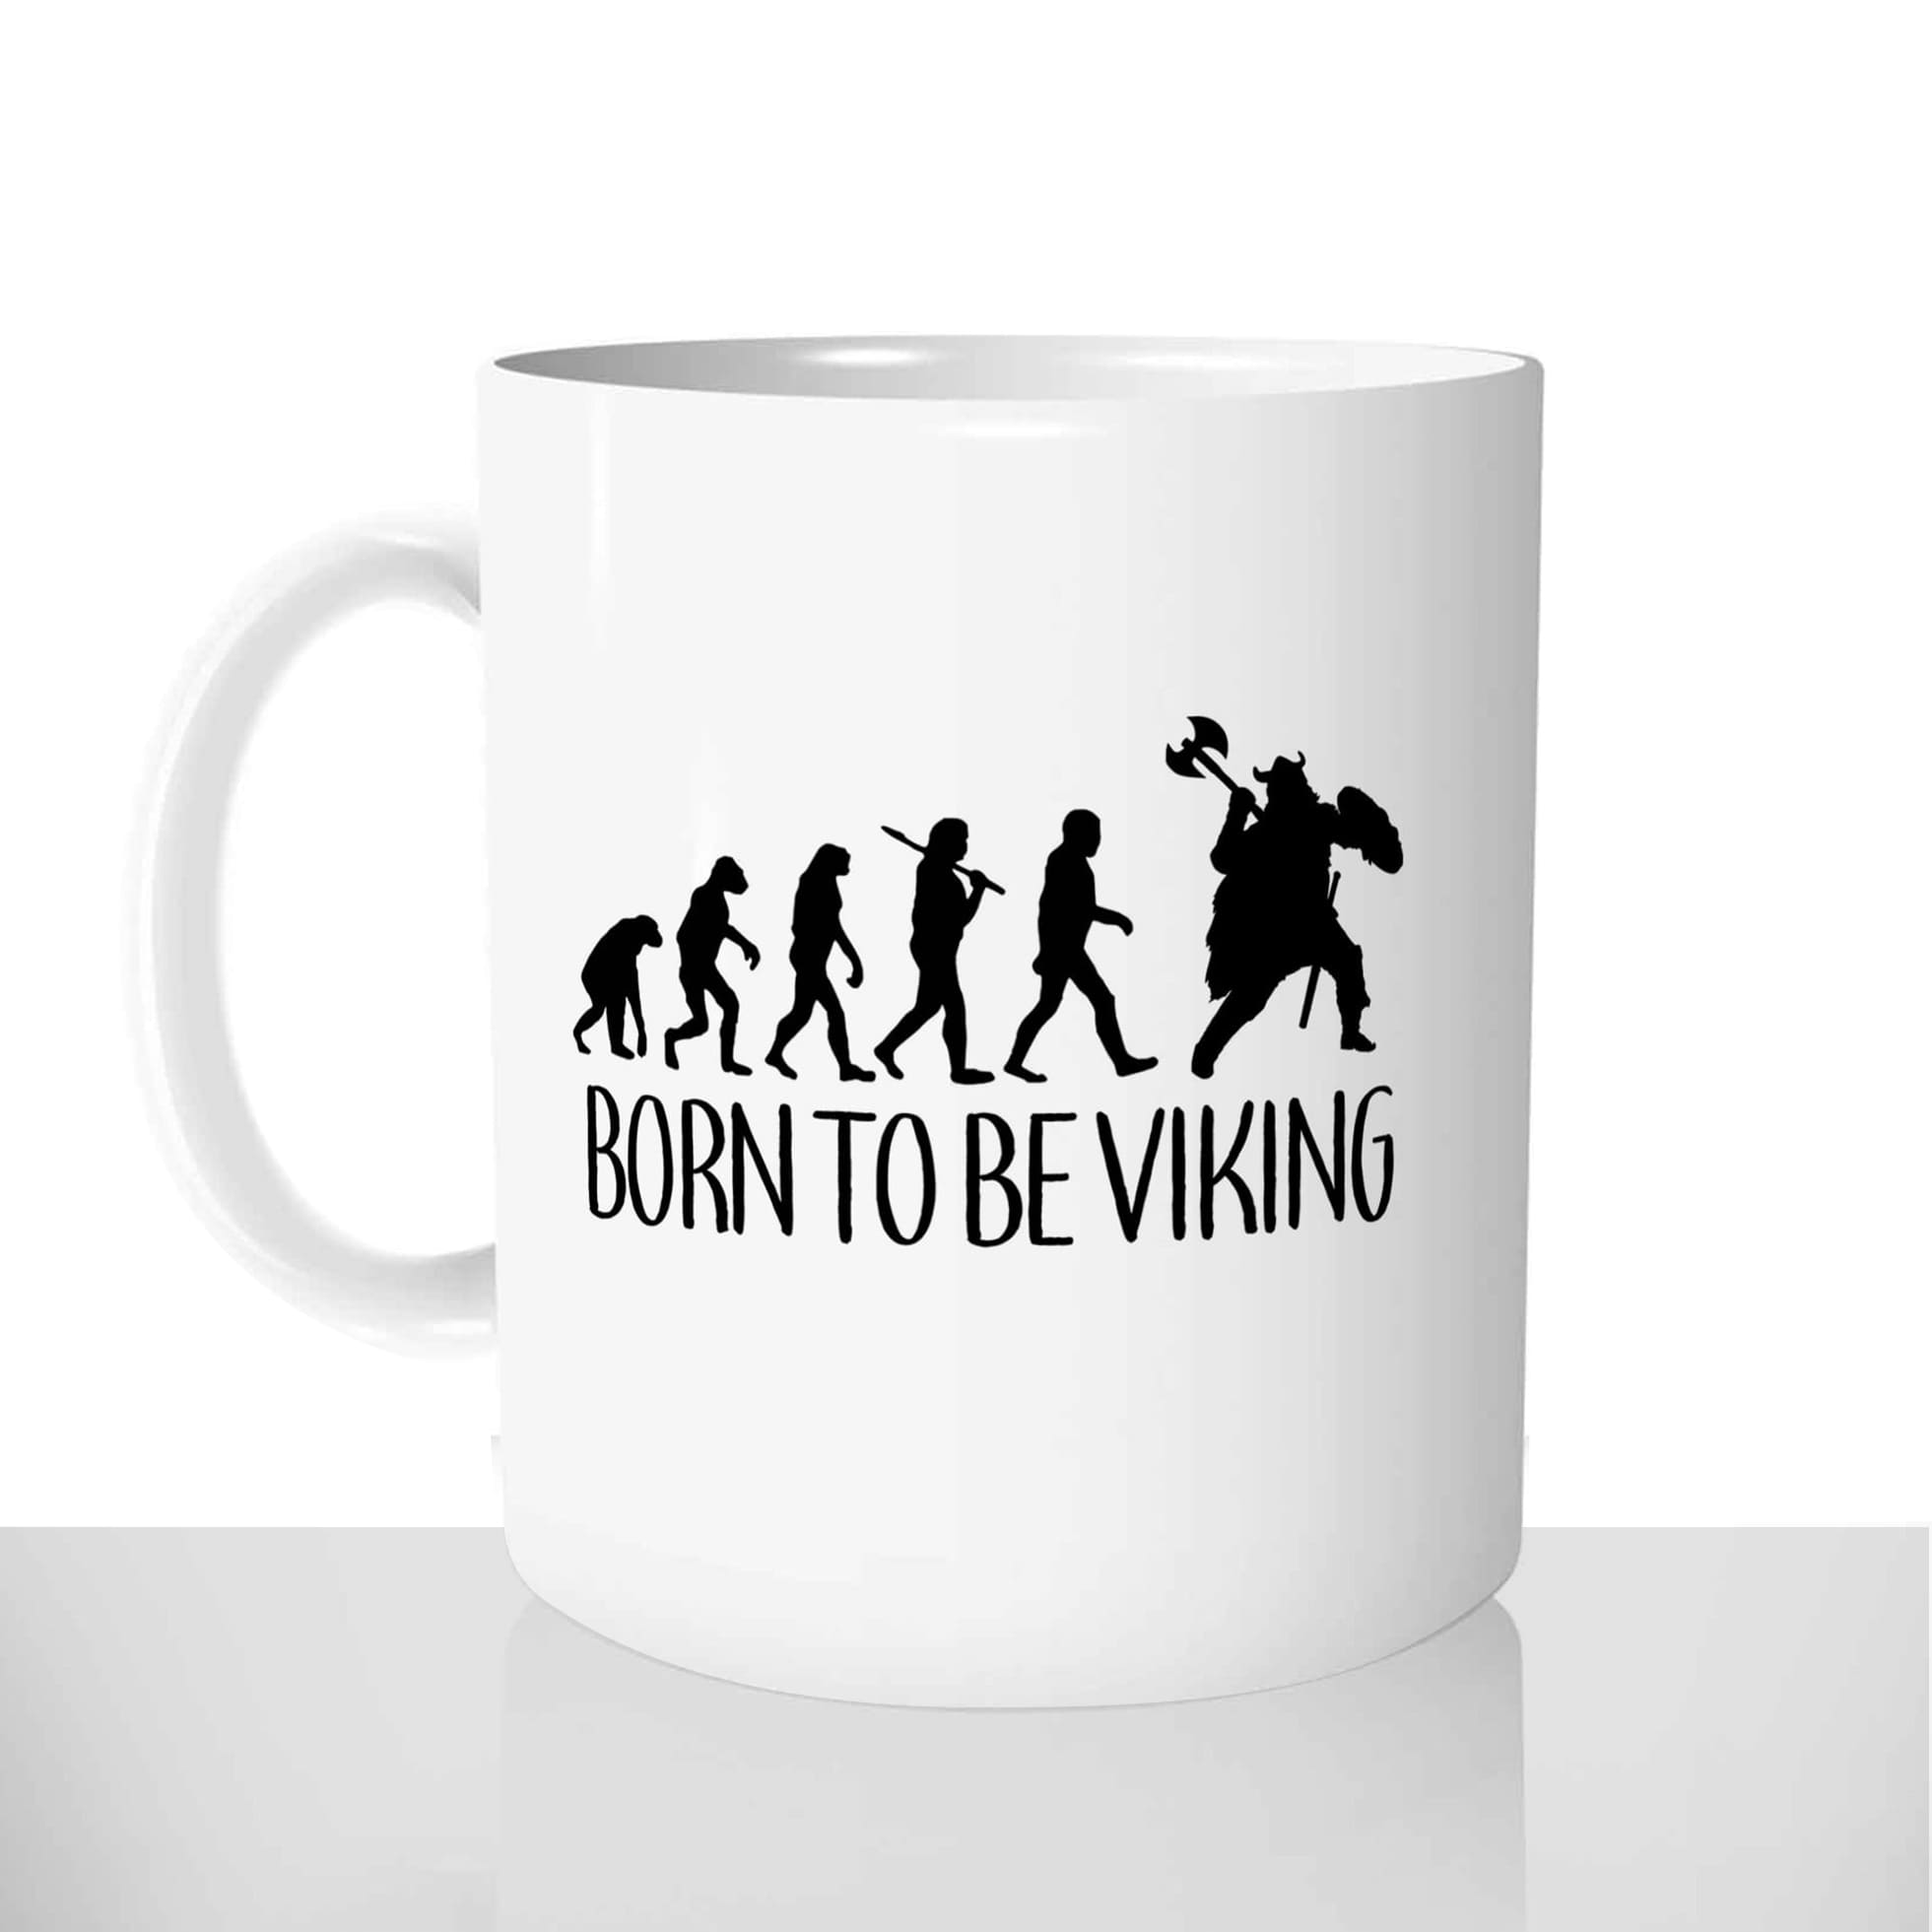 mug classique en céramique 11oz personnalisé personnalisation photo born to be viking route offrir cadeau chou